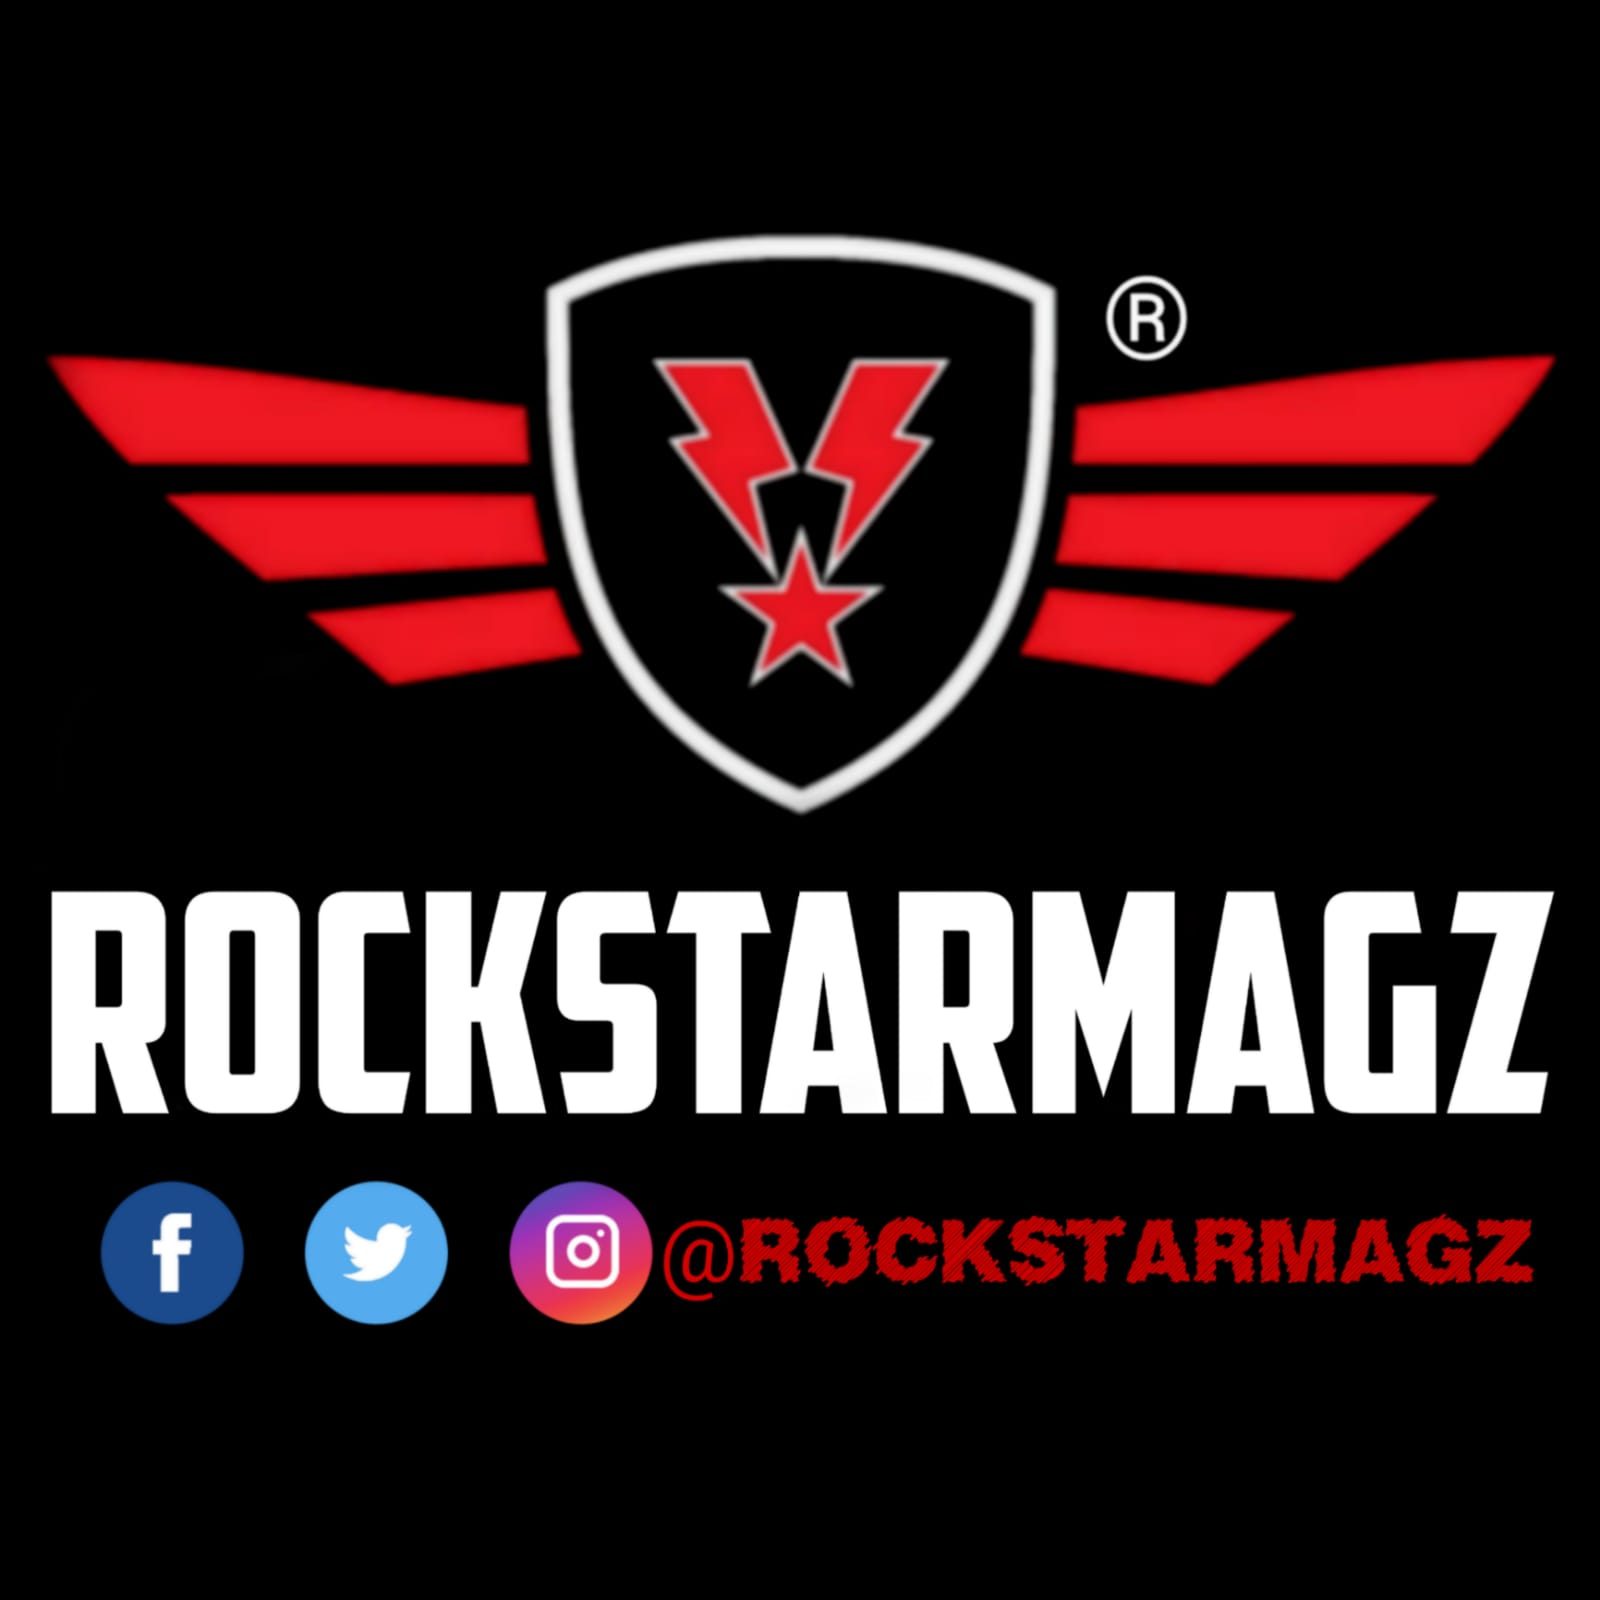 www.RockstarMagz.com